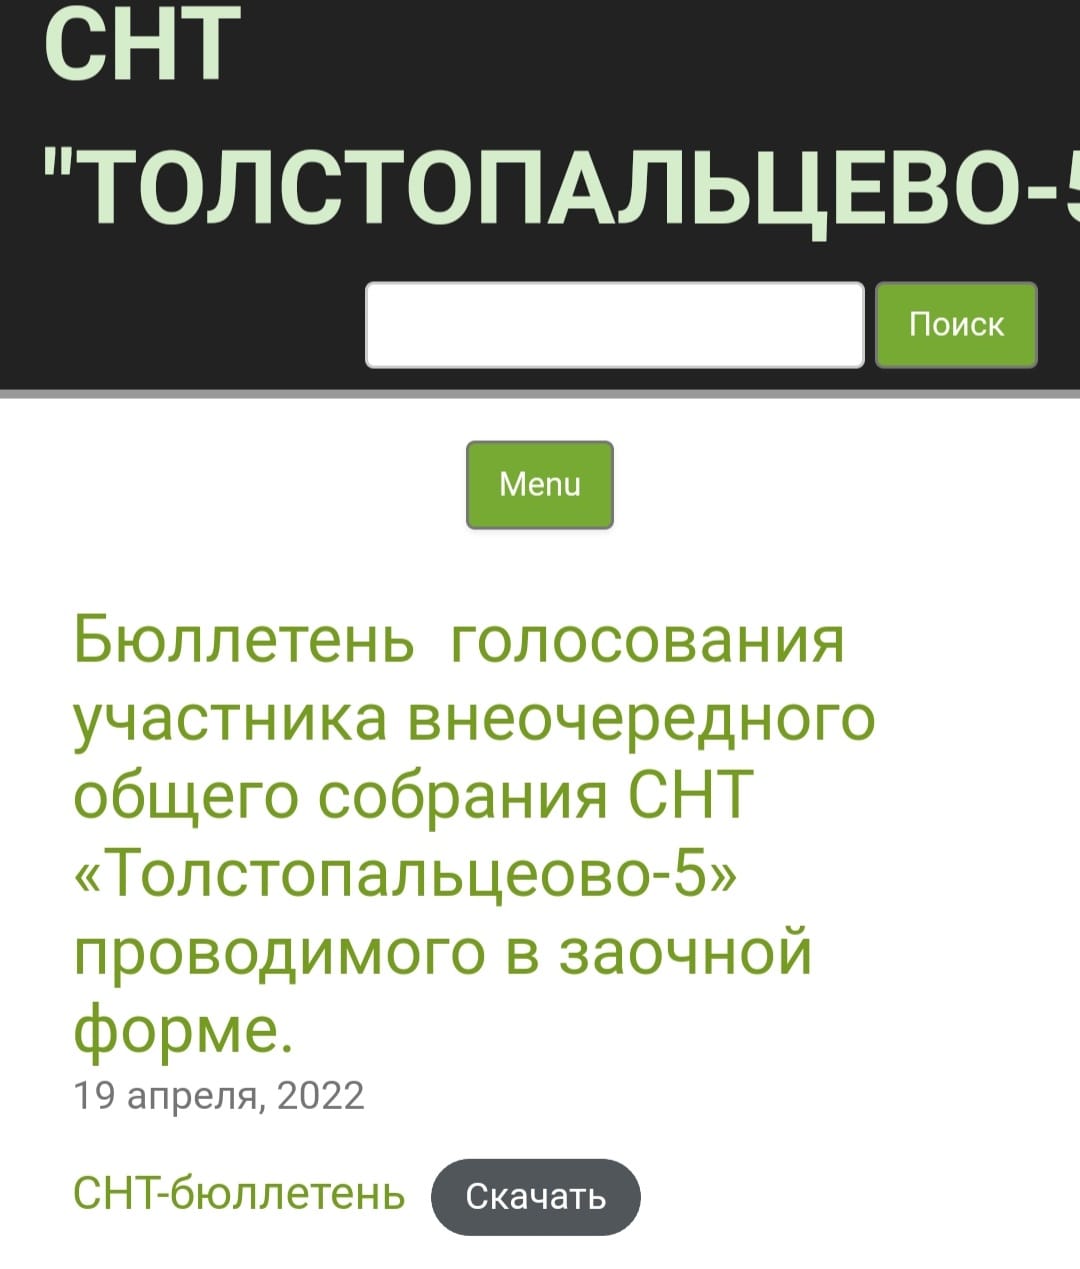 c-users-mikhailovaea-downloads-photo-2022-04-29-2-3 Достижения председателя и правления СНТ "Толстопальцево-5" за период 2018-2022